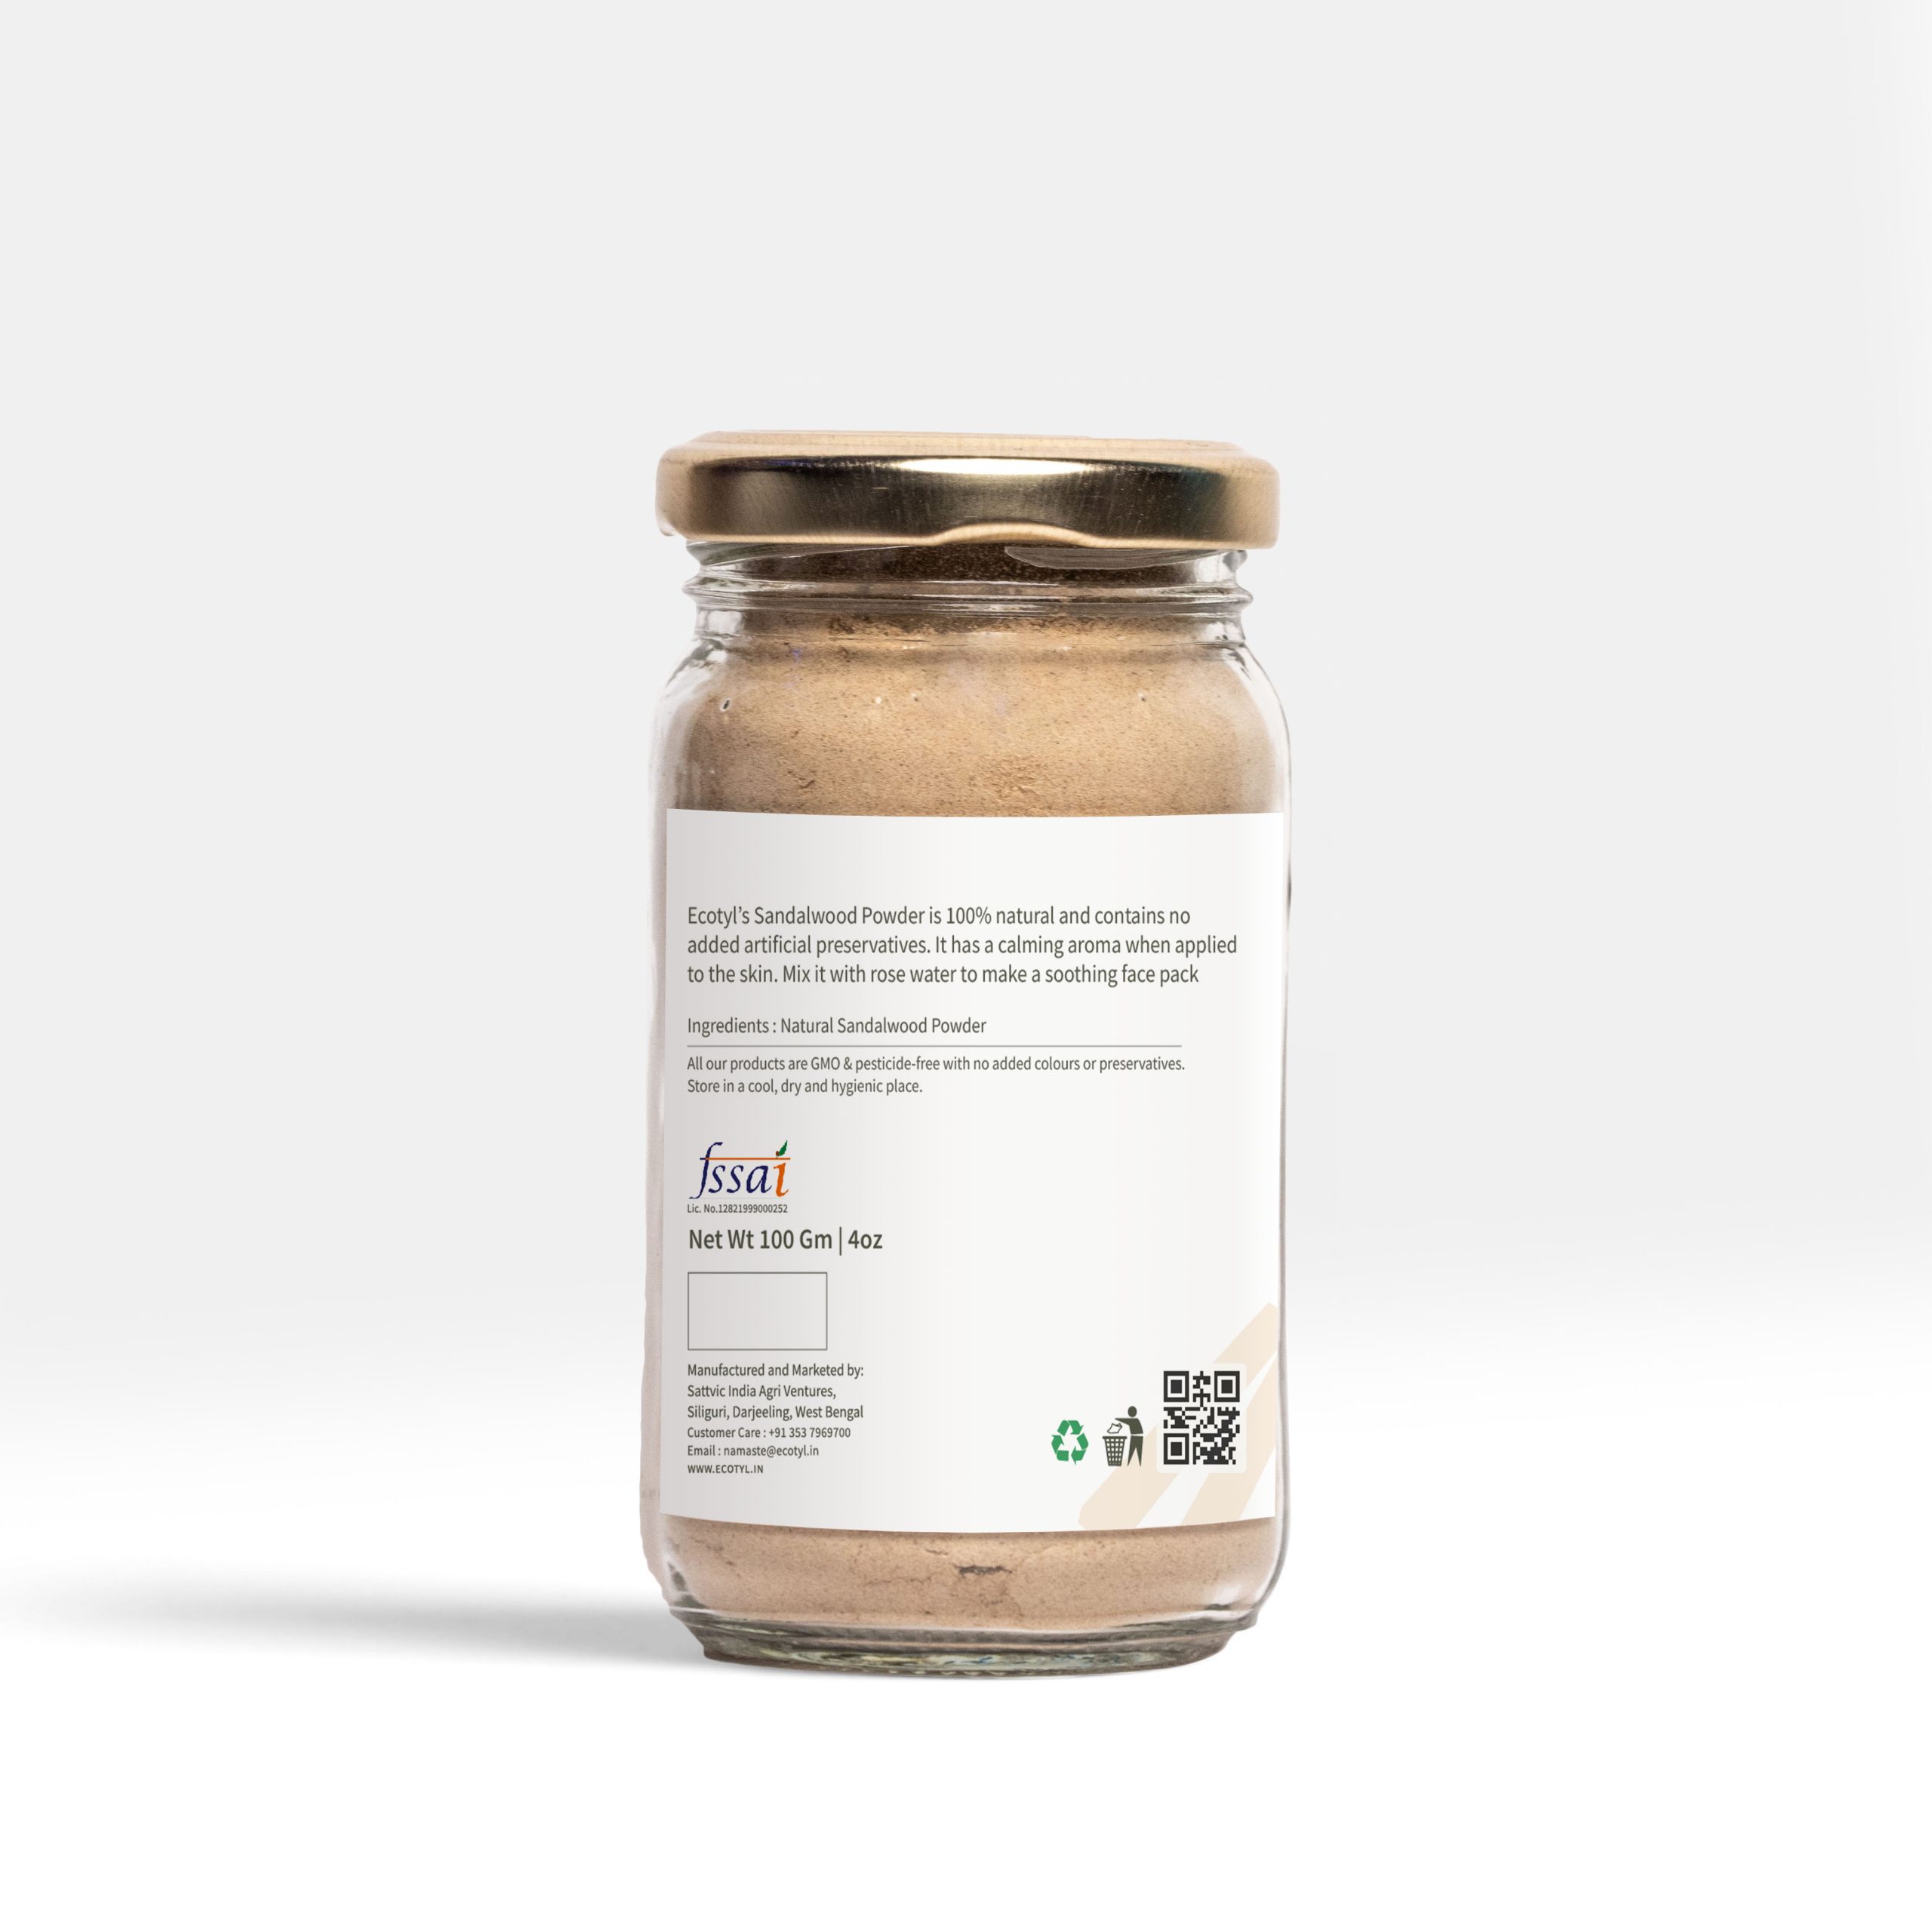 Product: Ecotyl Sandalwood Powder – 100 g